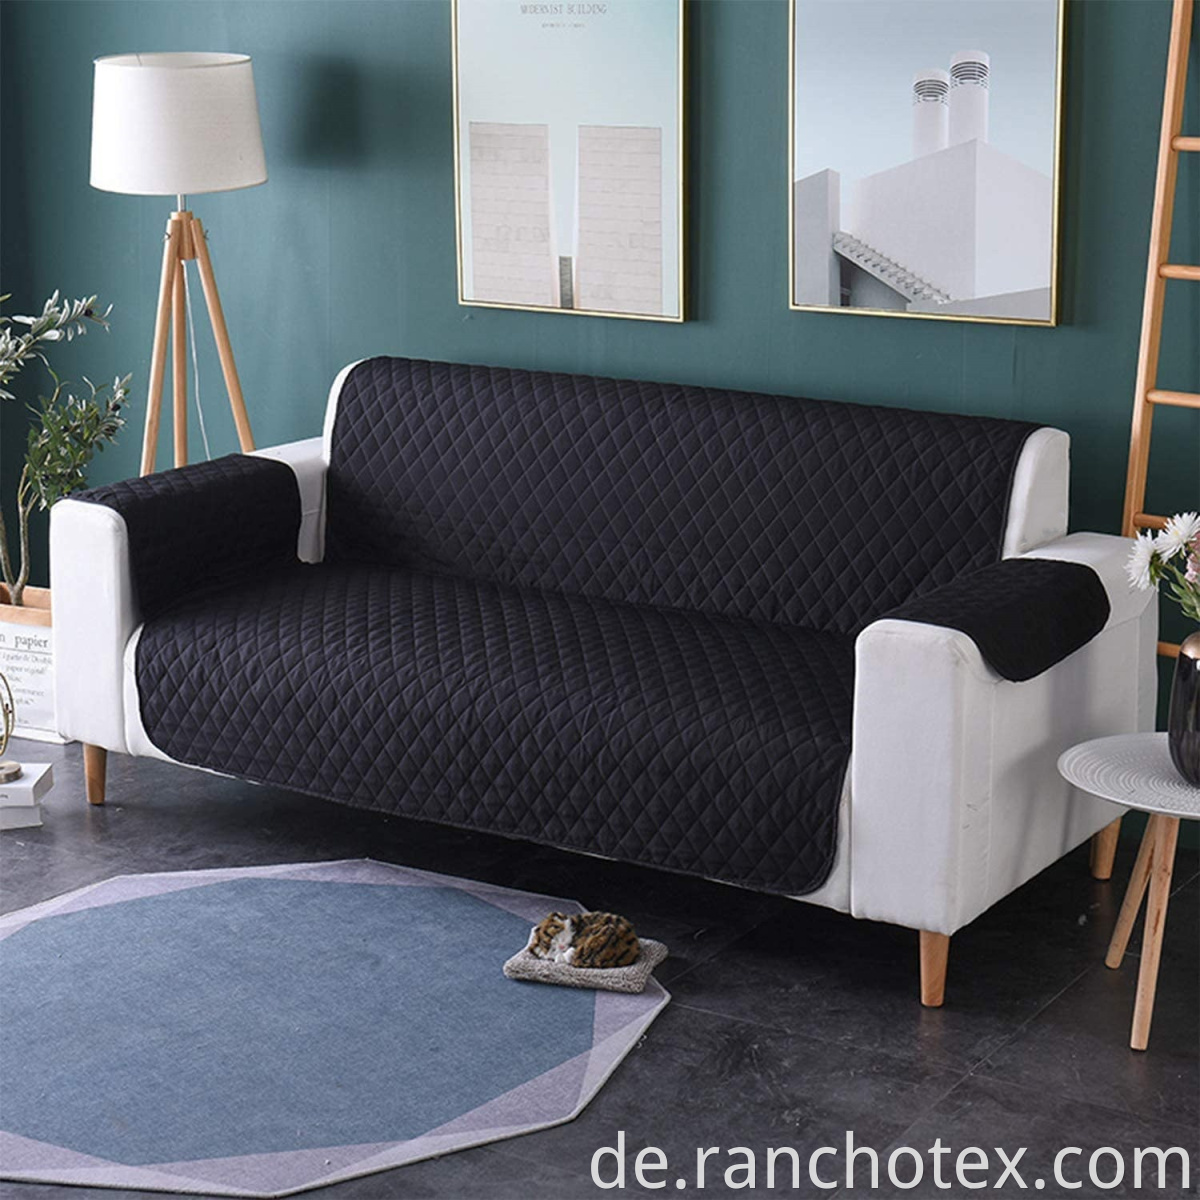 Mikrofasergewebe wasserdichtes Liebessitzsofa Couch Couch Deckung für Möbelschutz